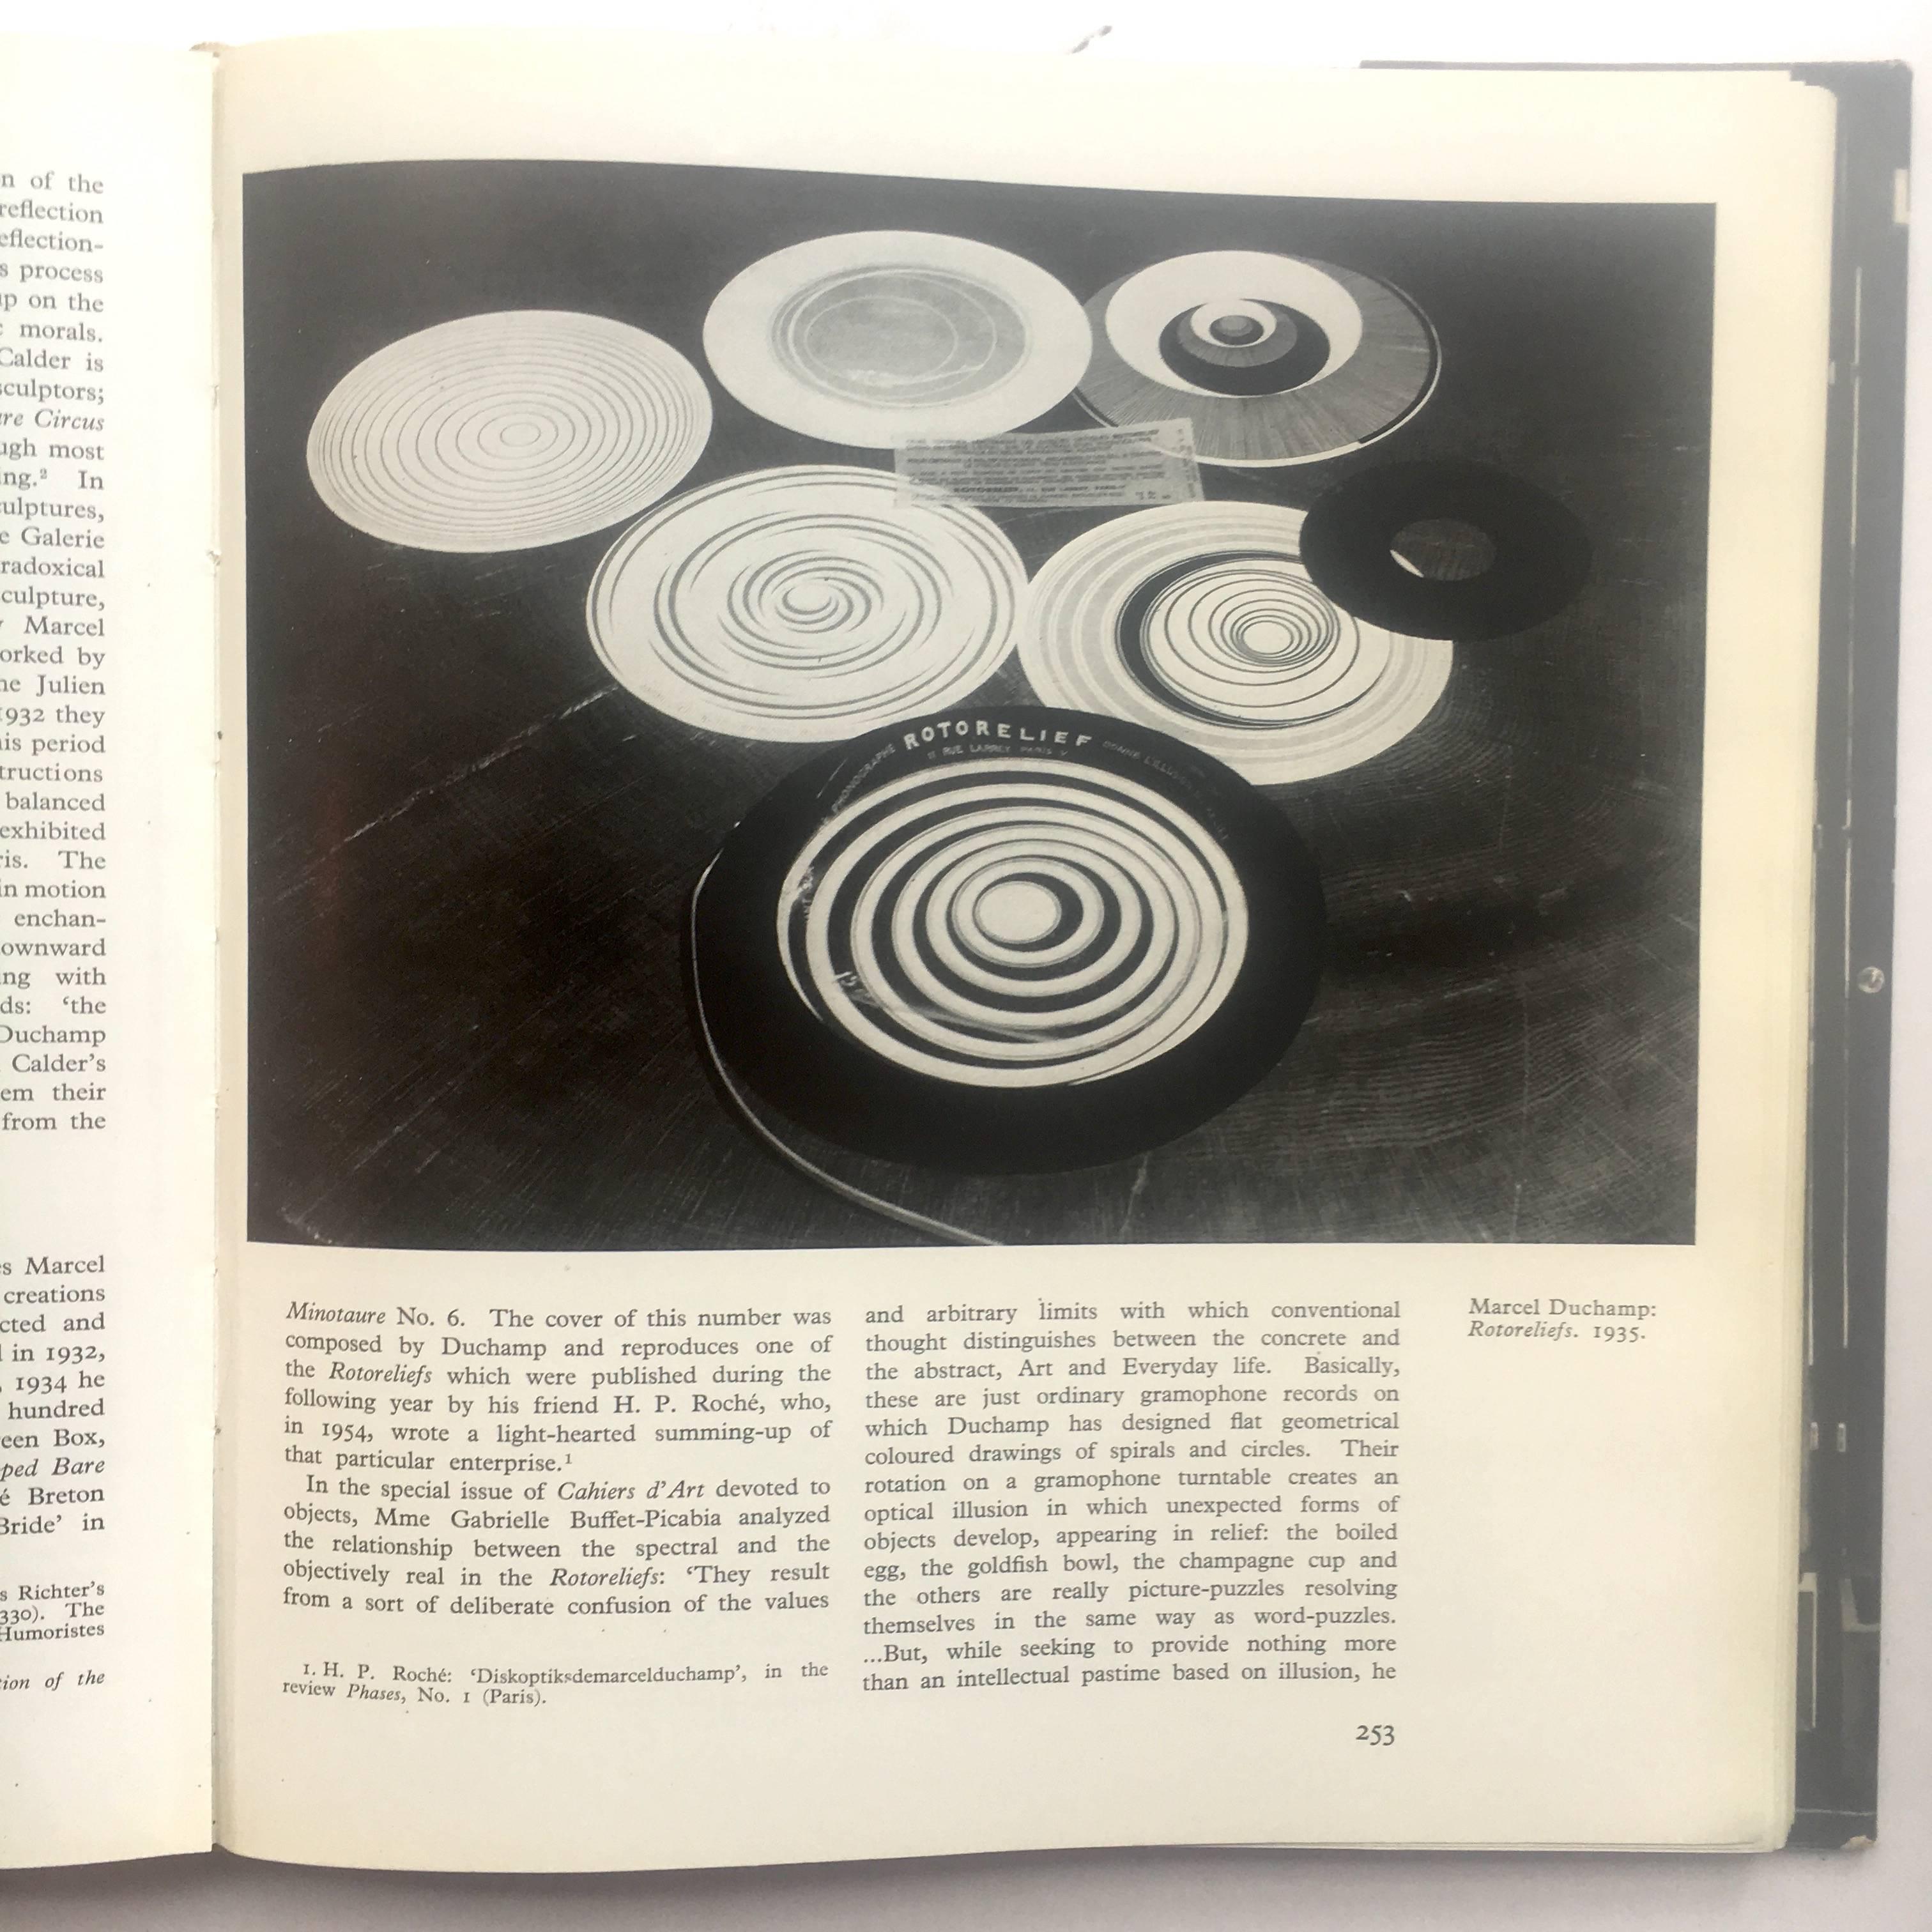 Erste britische Ausgabe, veröffentlicht von Weidenfeld & Nicolson, 1960.

Die Geschichte der surrealistischen Malerei zeichnet auf wunderbare Weise den erstaunlichen kreativen Ausbruch auf, in dem einige der inspiriertesten Künstler der Zeit wie